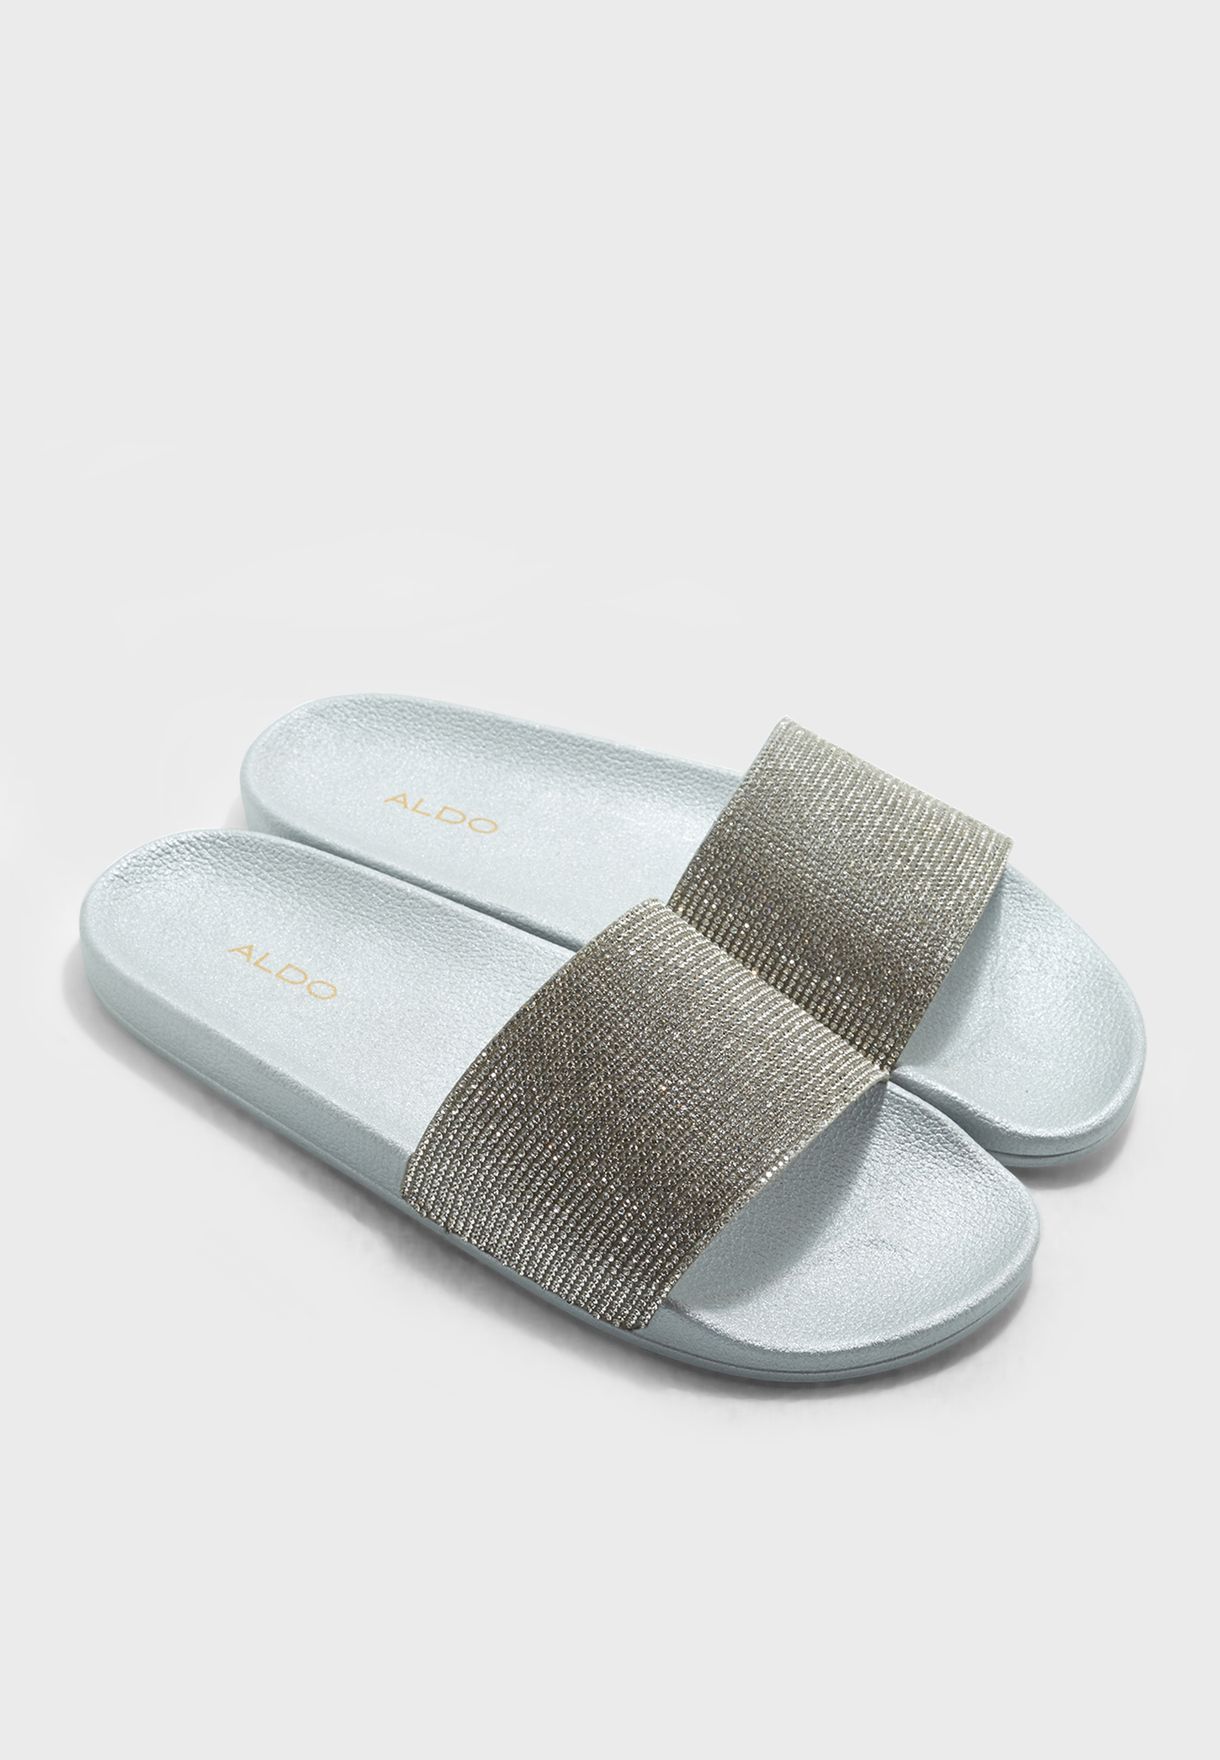 white nike comfort flip flops